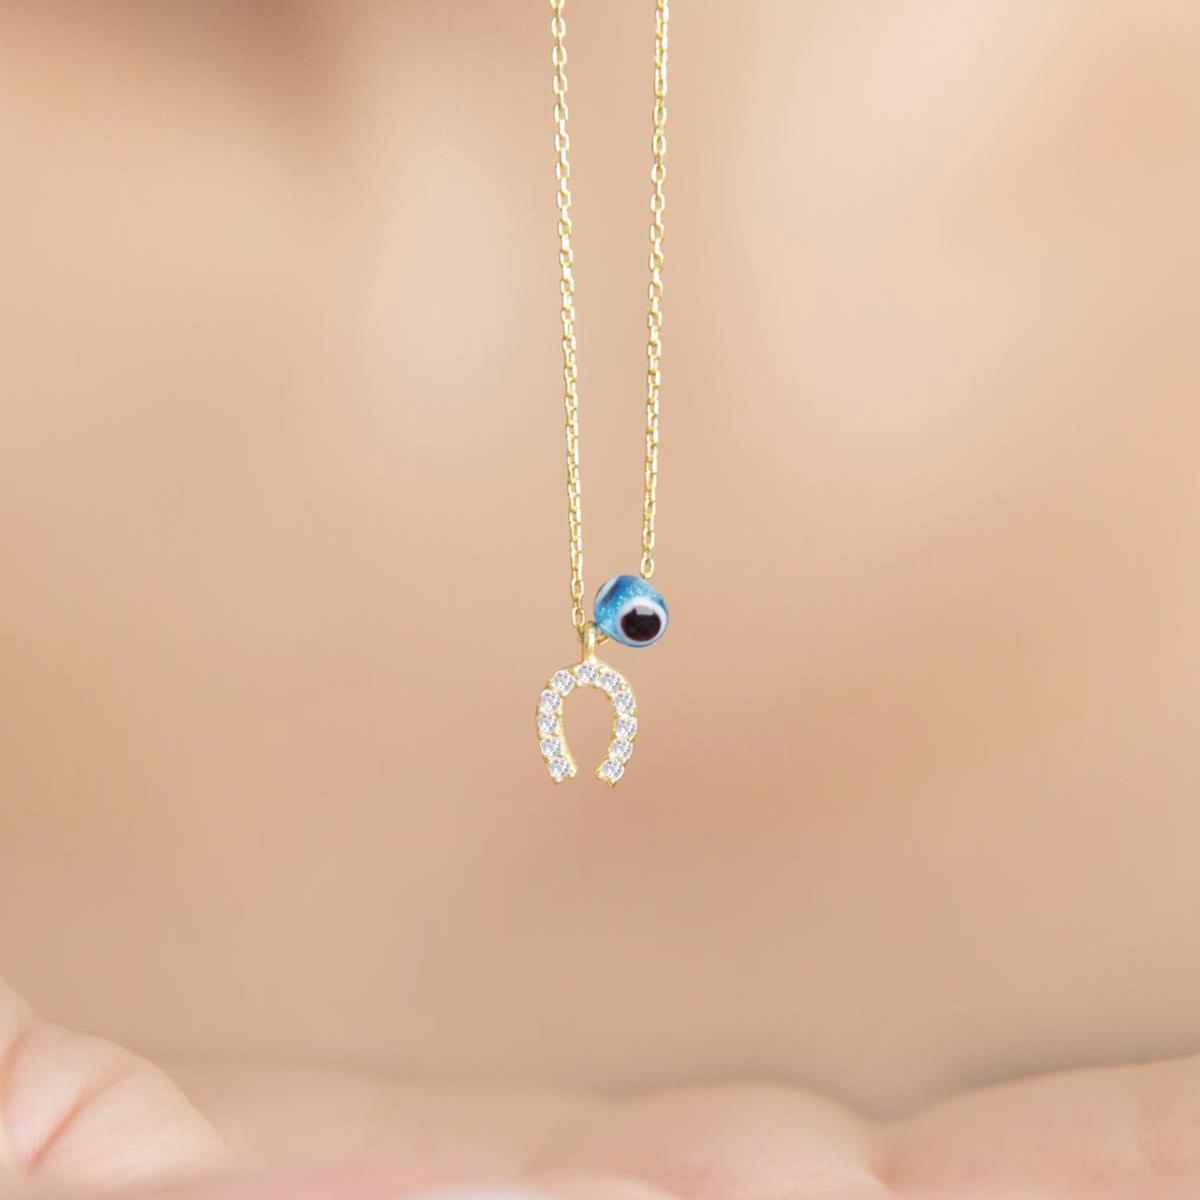 Horseshoe Diamond Evil Eye Necklace • Tiny Horseshoe Pendant Necklace - Trending Silver Gifts